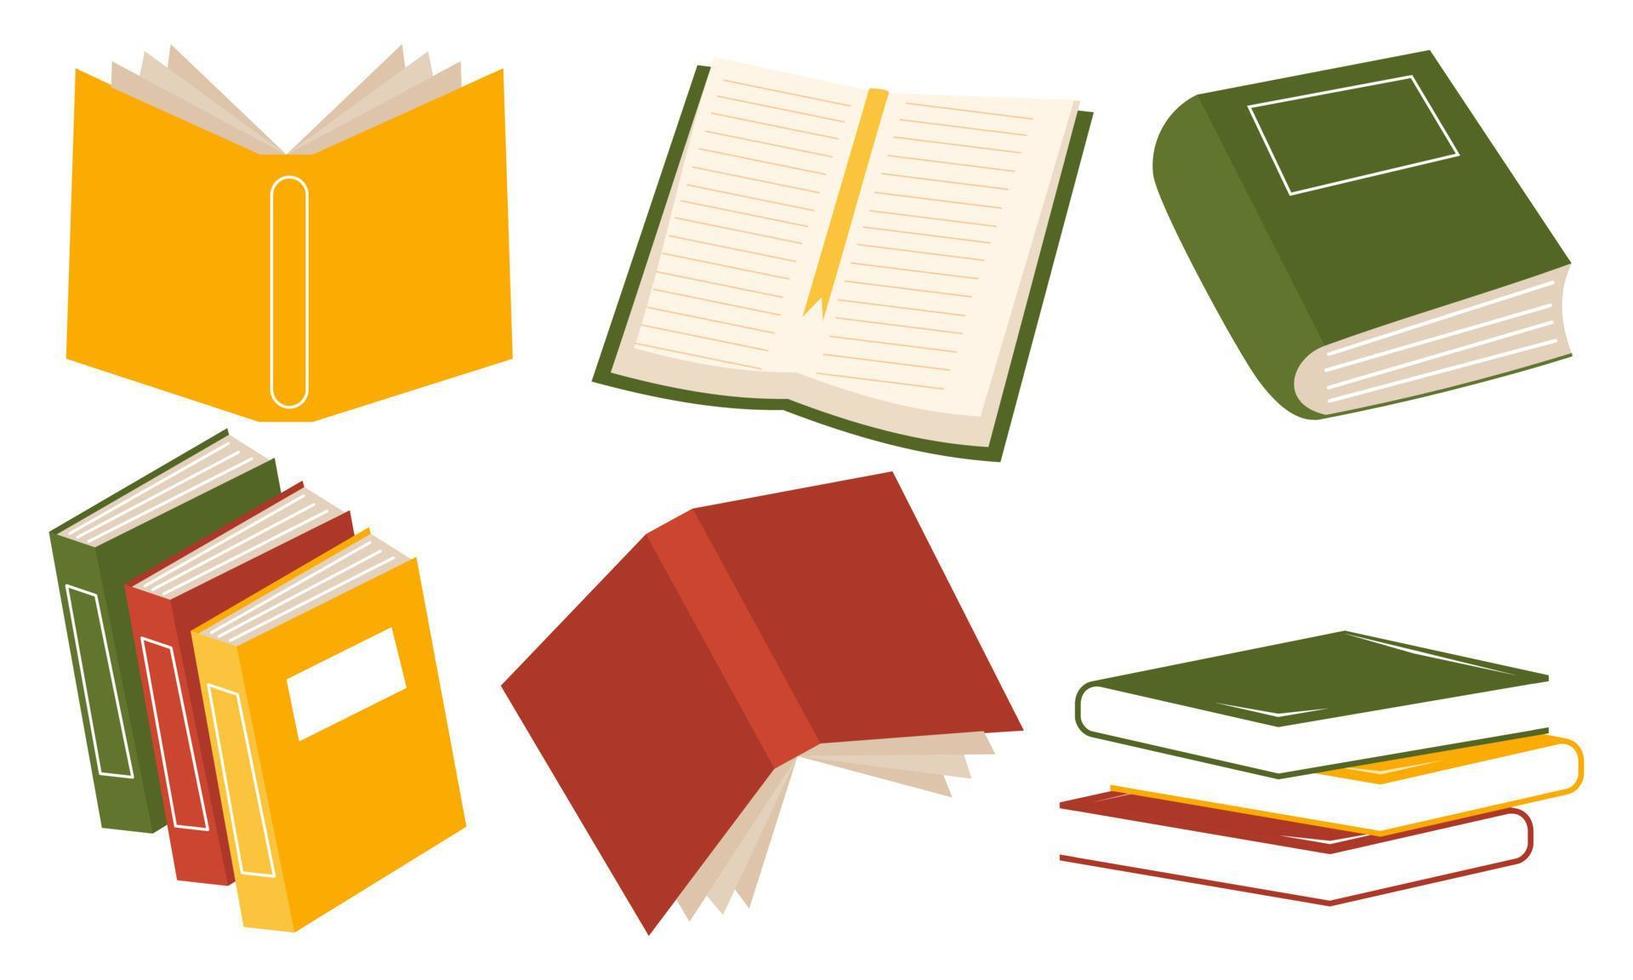 conjunto de livros para leitura, literatura, dicionários, enciclopédias, planejadores com marcadores. vetor